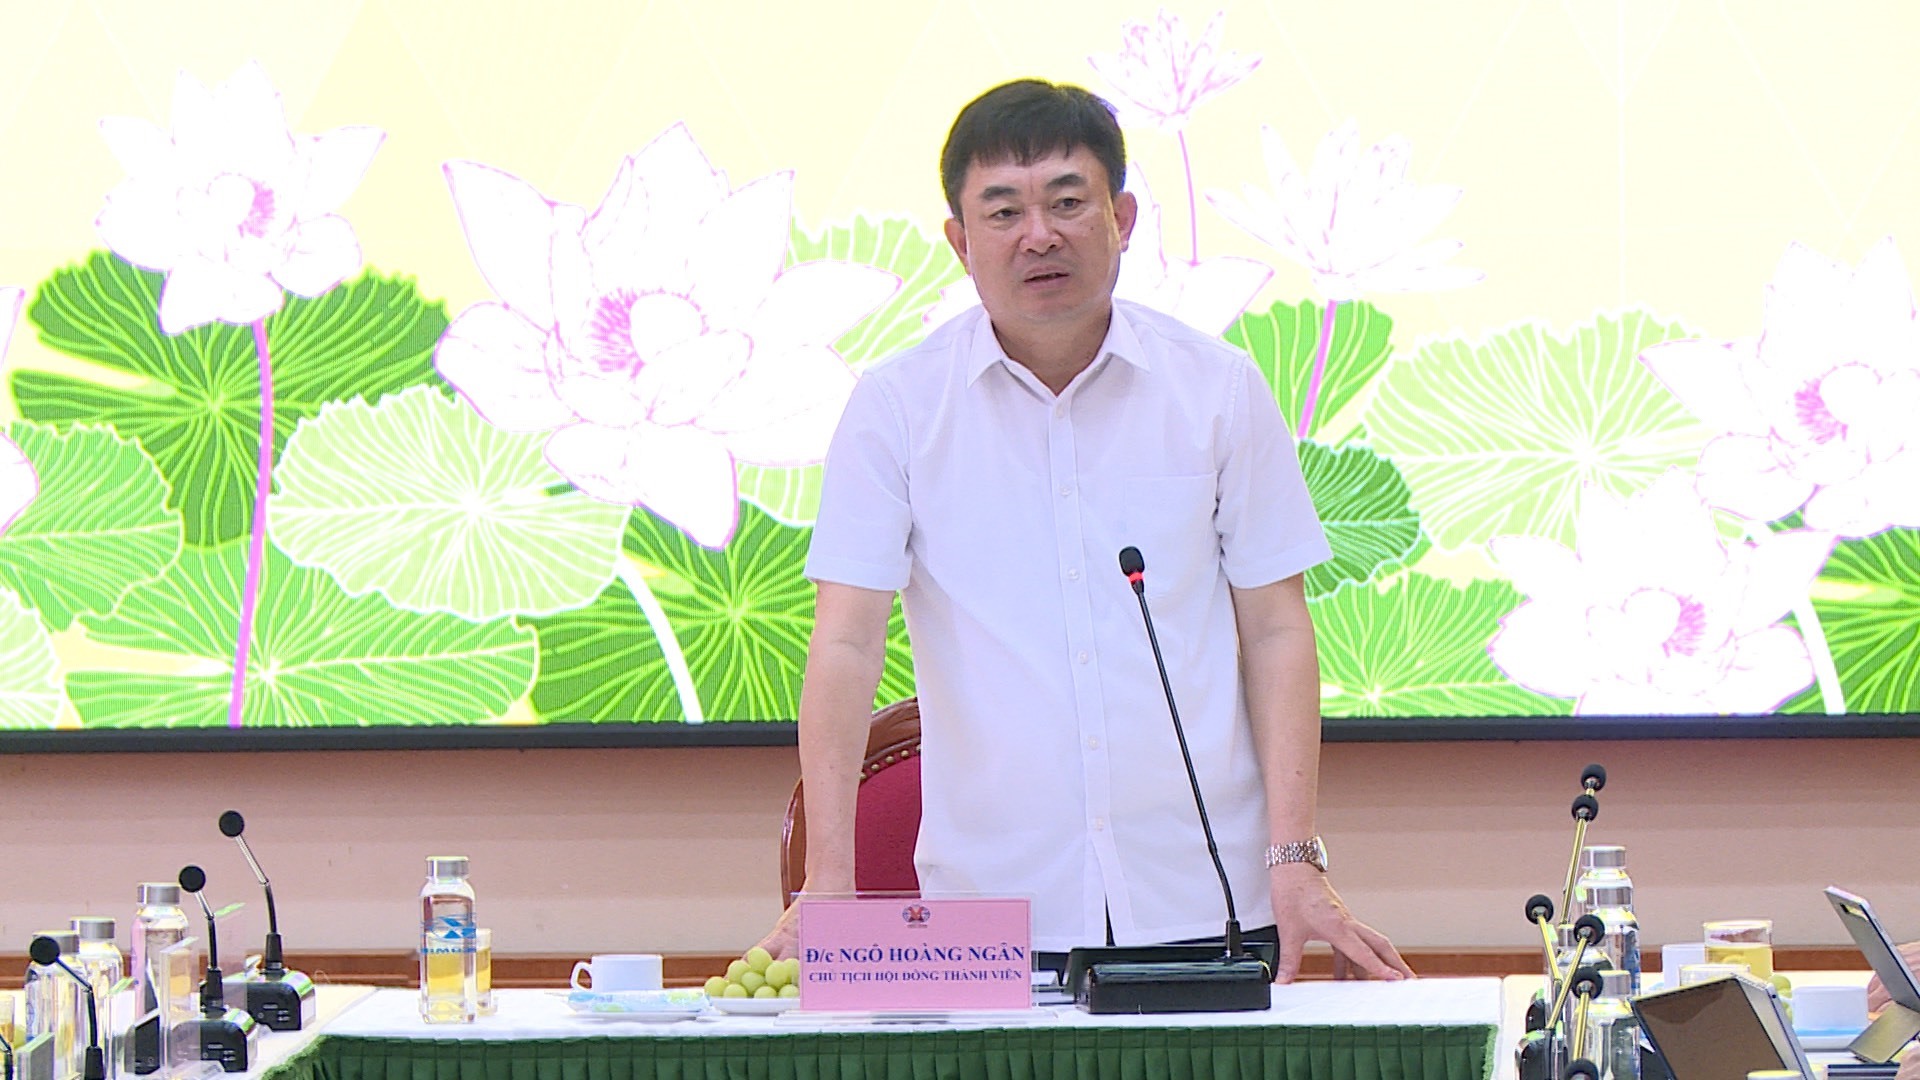 Phó Bí thư Tỉnh ủy Quảng Ninh chính thức bắt đầu công việc mới ở TKV - Ảnh 1